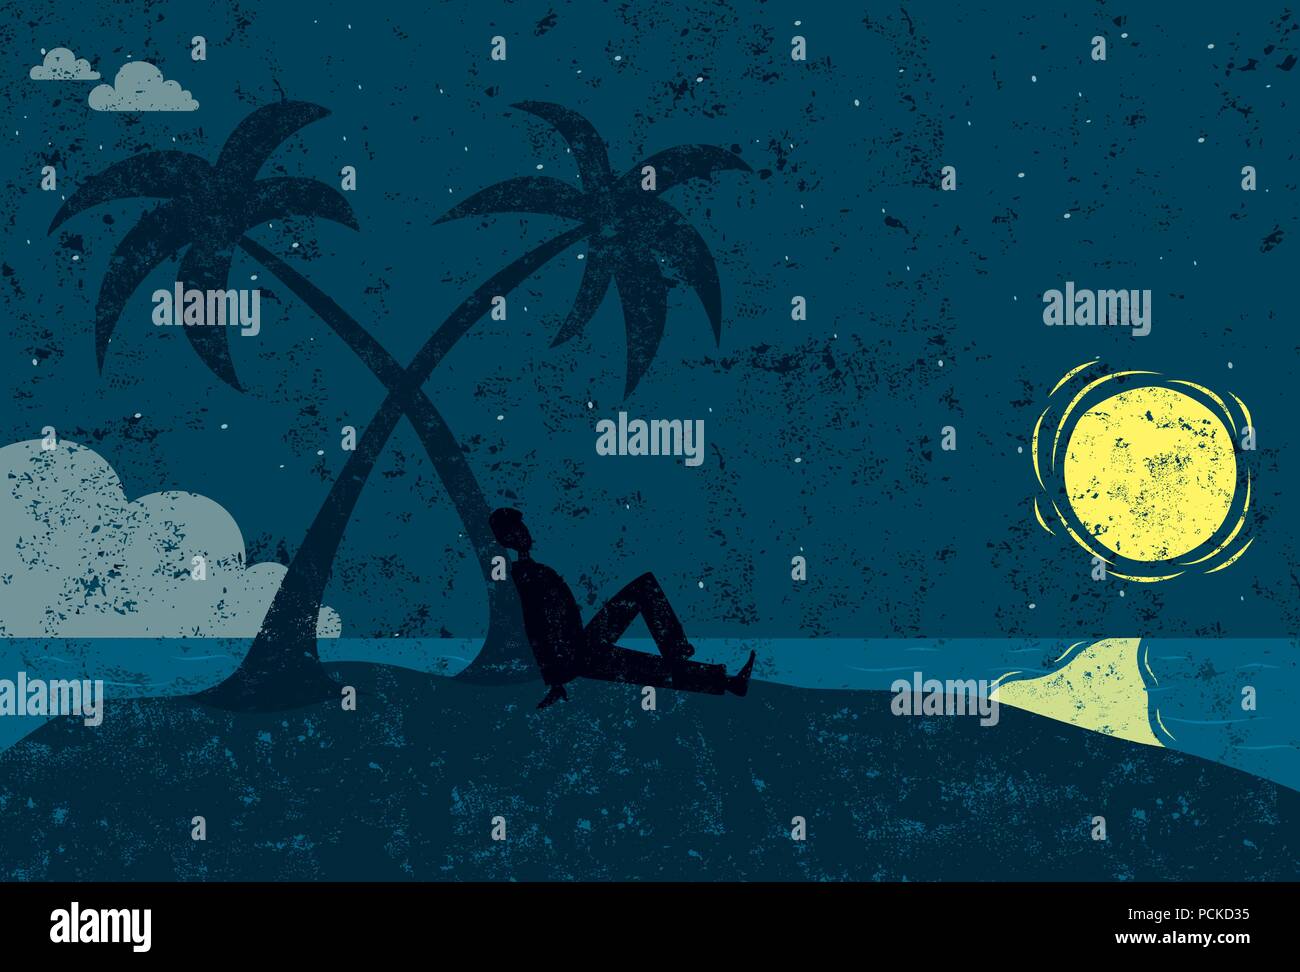 Mann auf einer Insel Silhouette sitzt ein Mann in der Nähe einer Palme auf einer einsamen Insel am Mond suchen. Stock Vektor